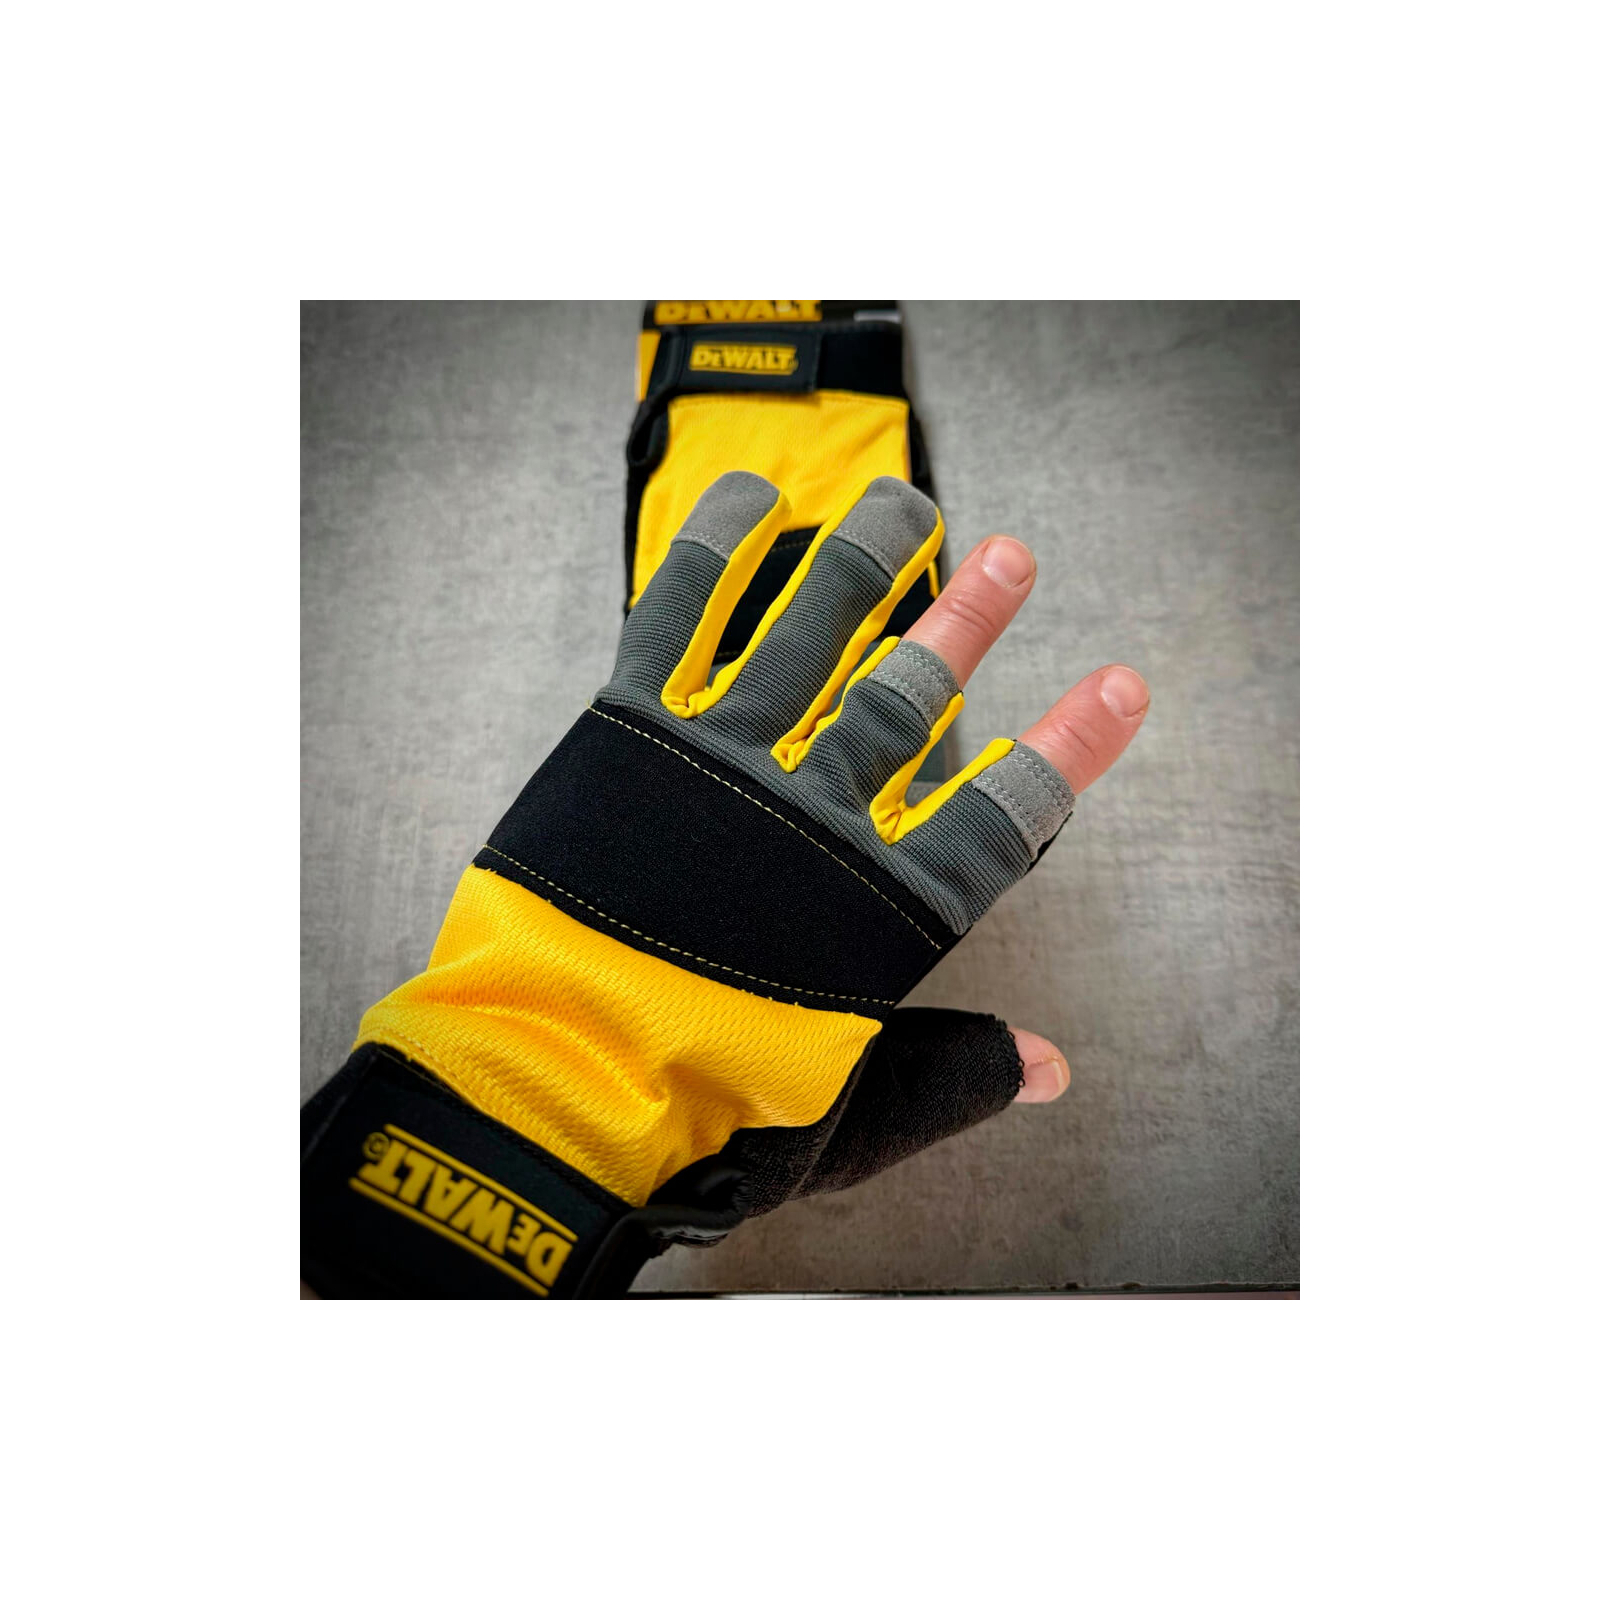 Защитные перчатки DeWALT частично открытые, разм. L/9, с накладками на ладони (DPG214L) изображение 6